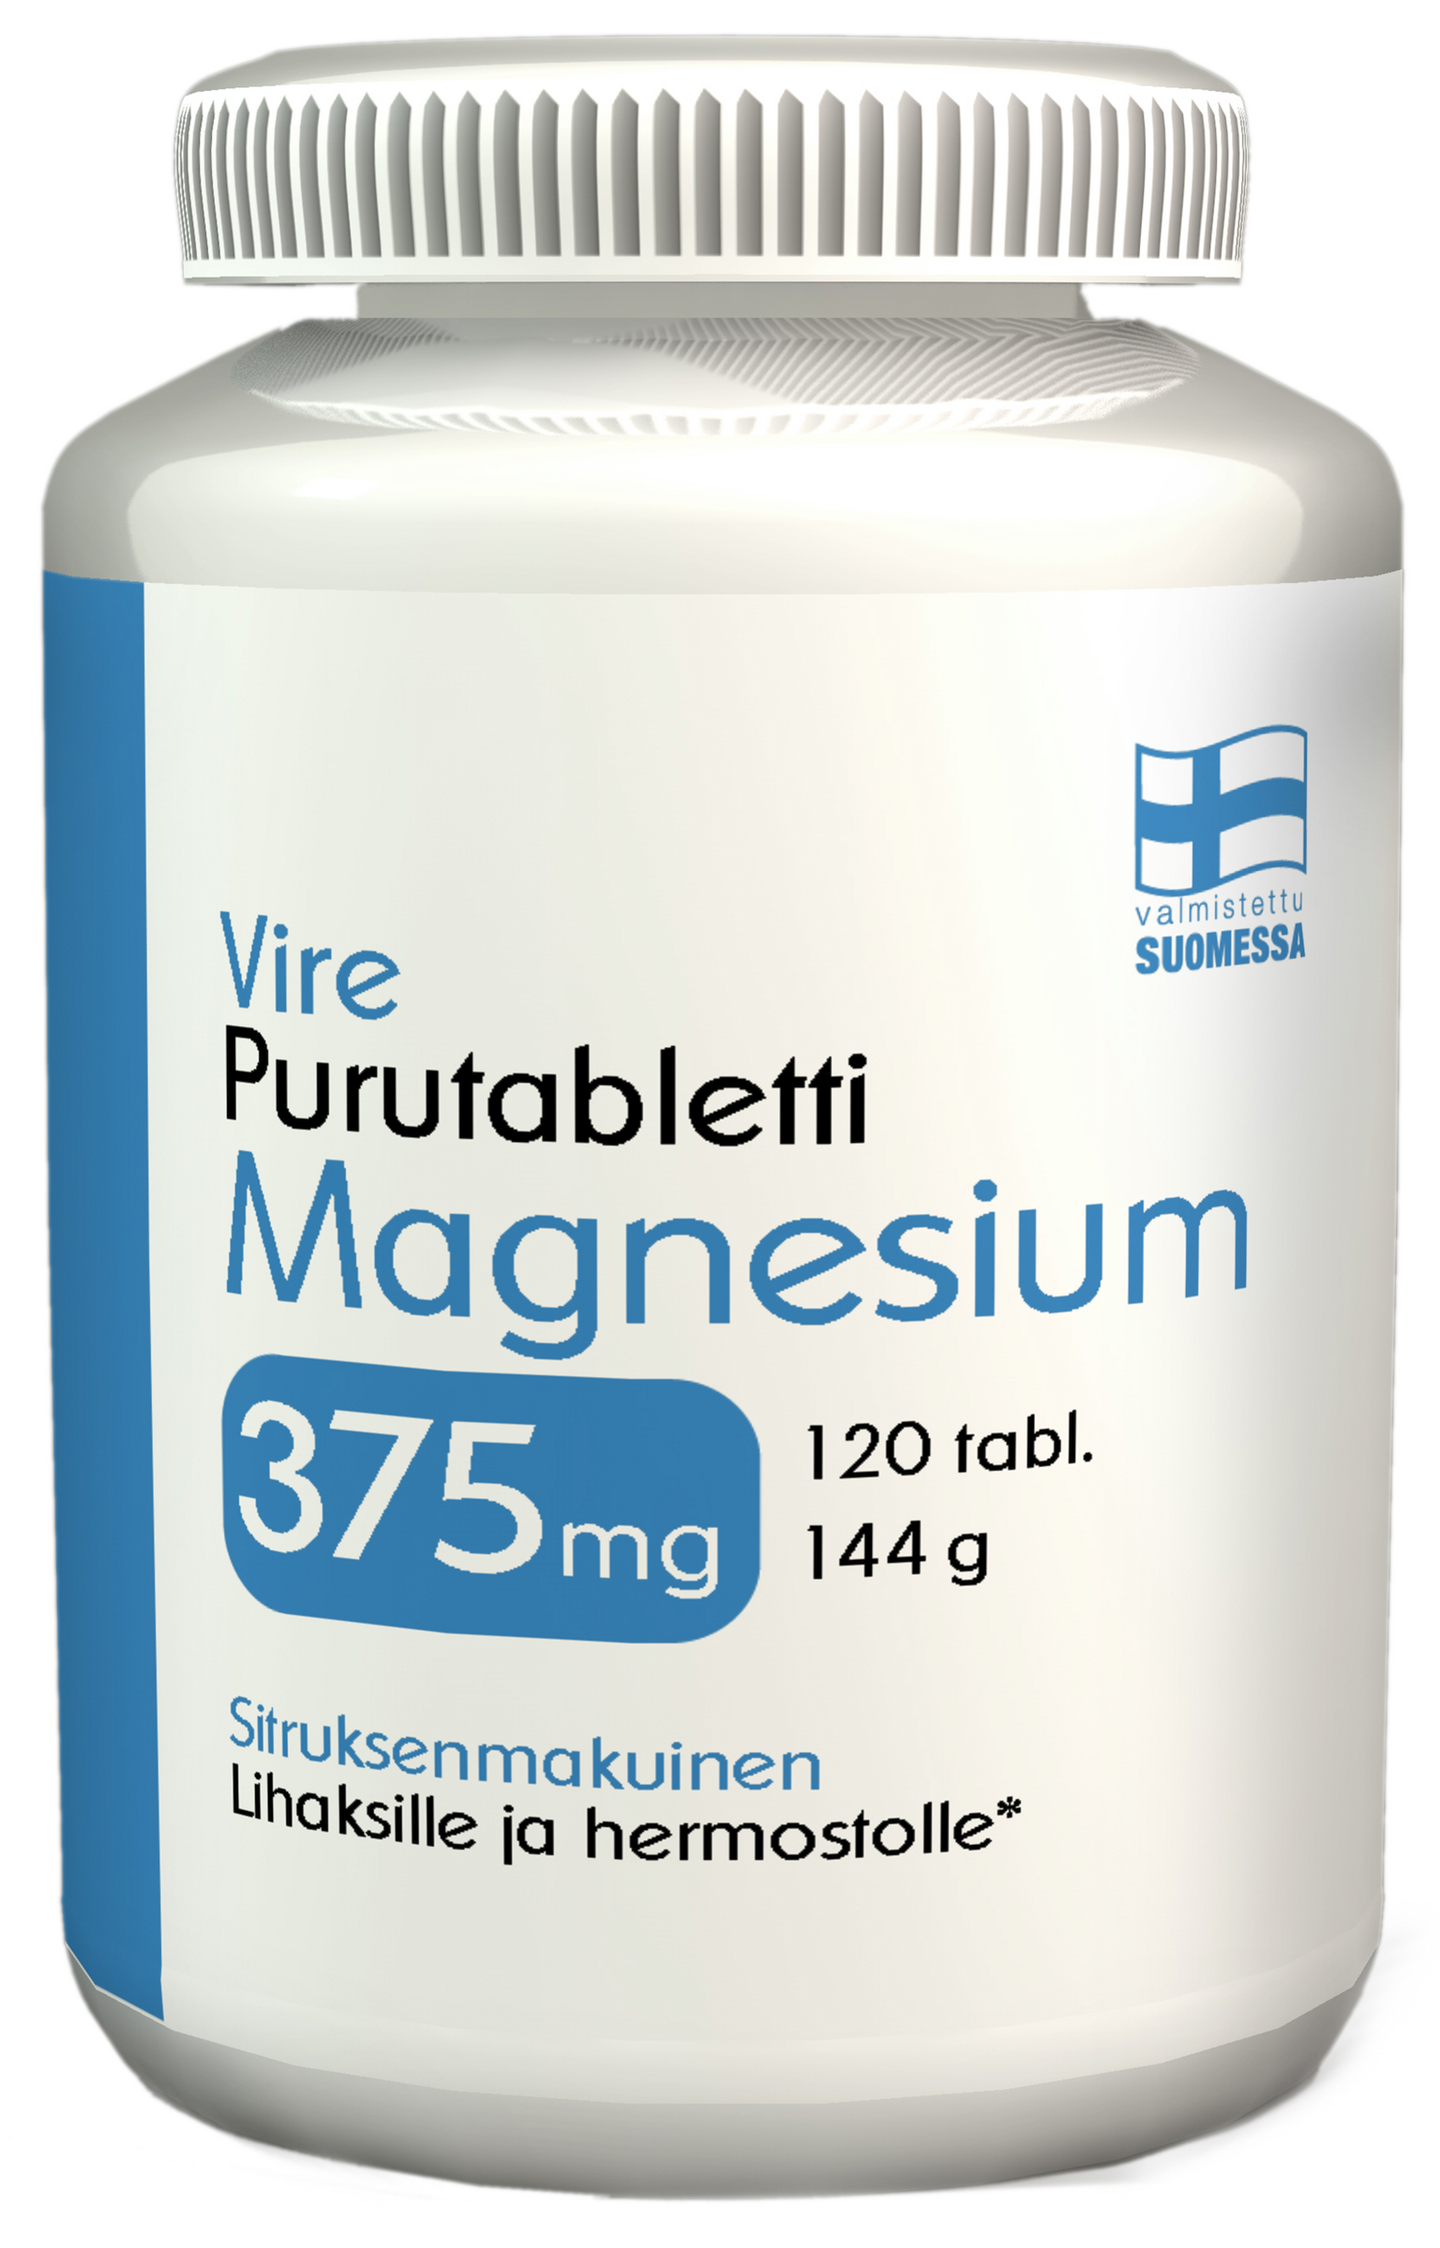 Vire Magnesiumvalmiste magnesium 375 mg purutabletti 120 tablettia